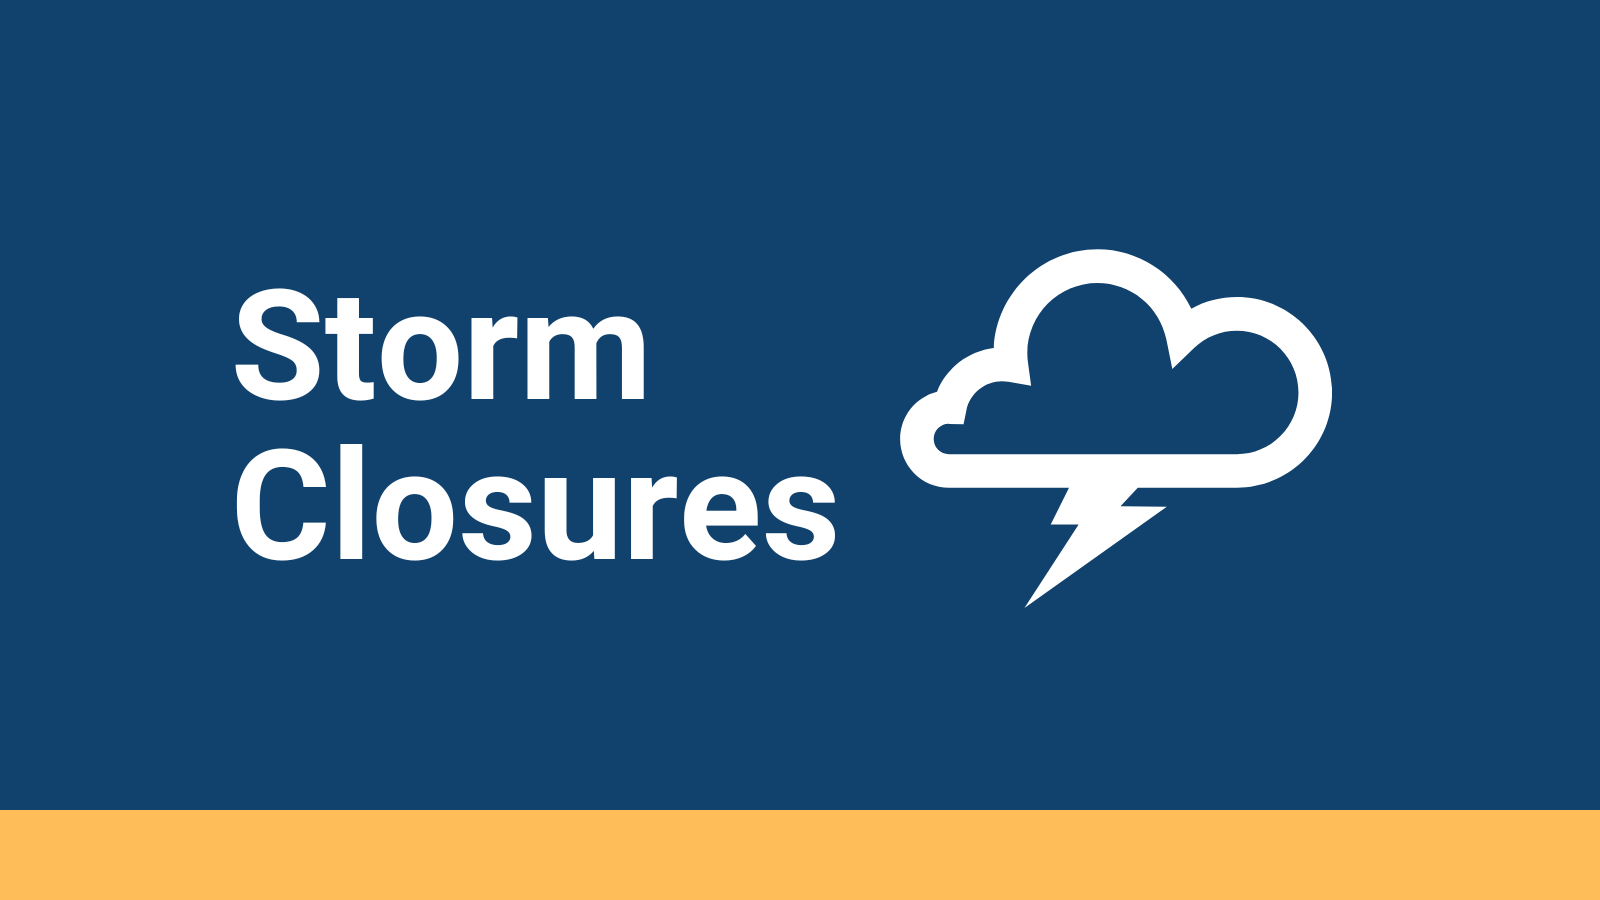 Storm closures graphic